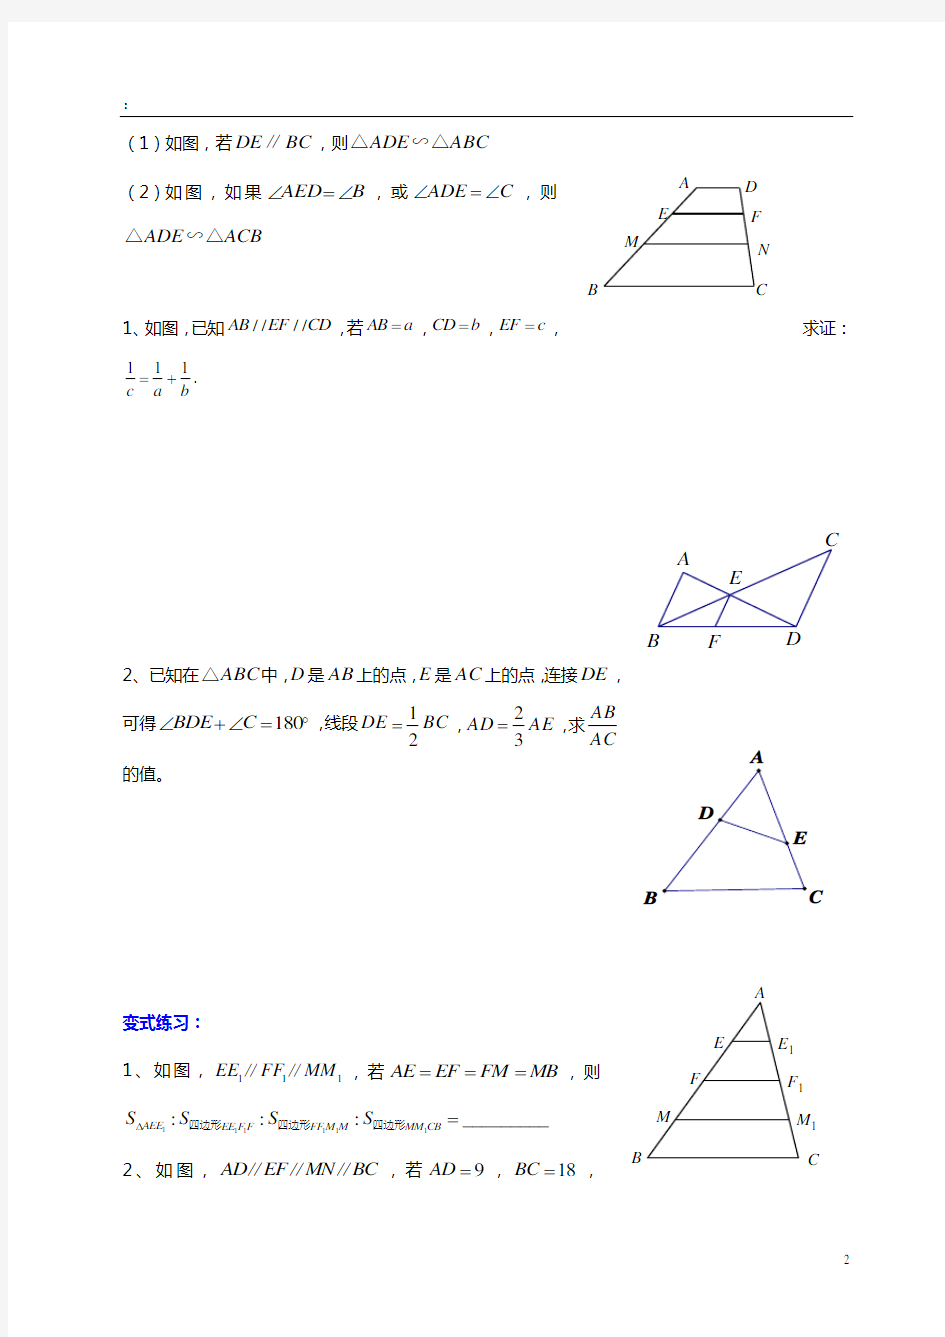 初三数学的相似三角形的常见模型